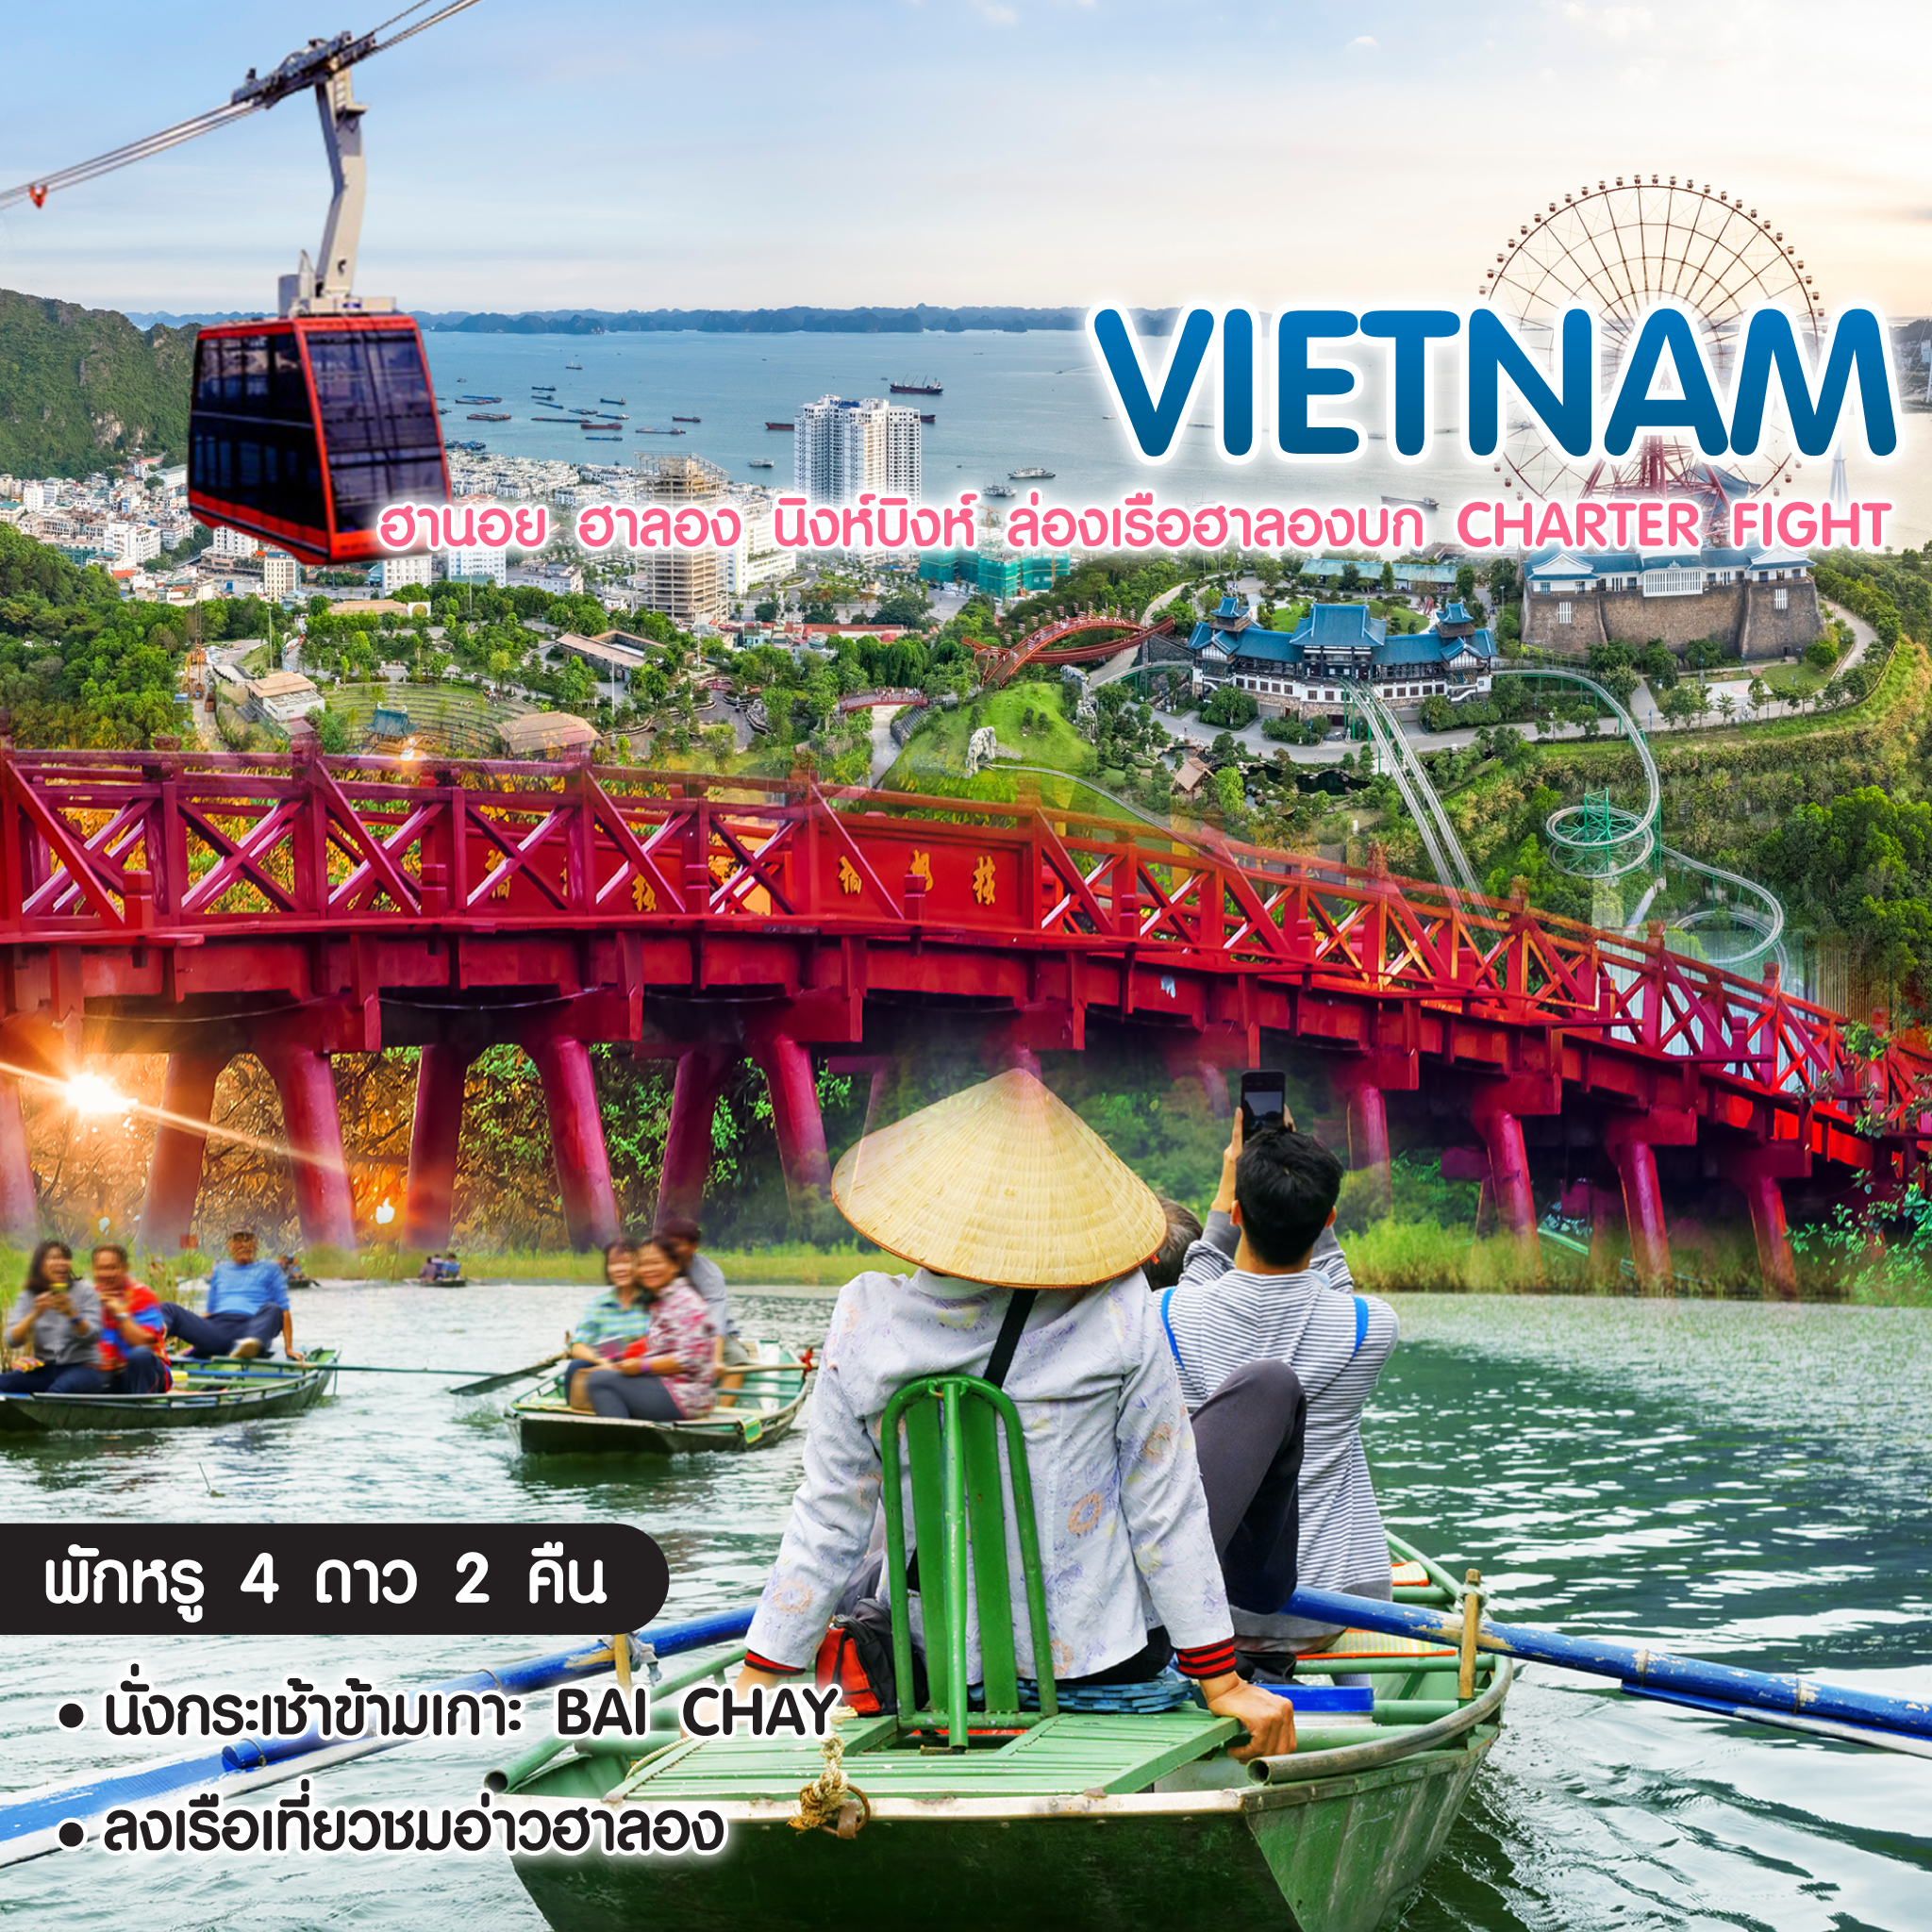 ทัวร์เวียดนามเหนือ Pro Vietnam ฮานอย ฮาลอง นิงห์บิงห์ ล่องเรือฮาลองบก Charter Fight